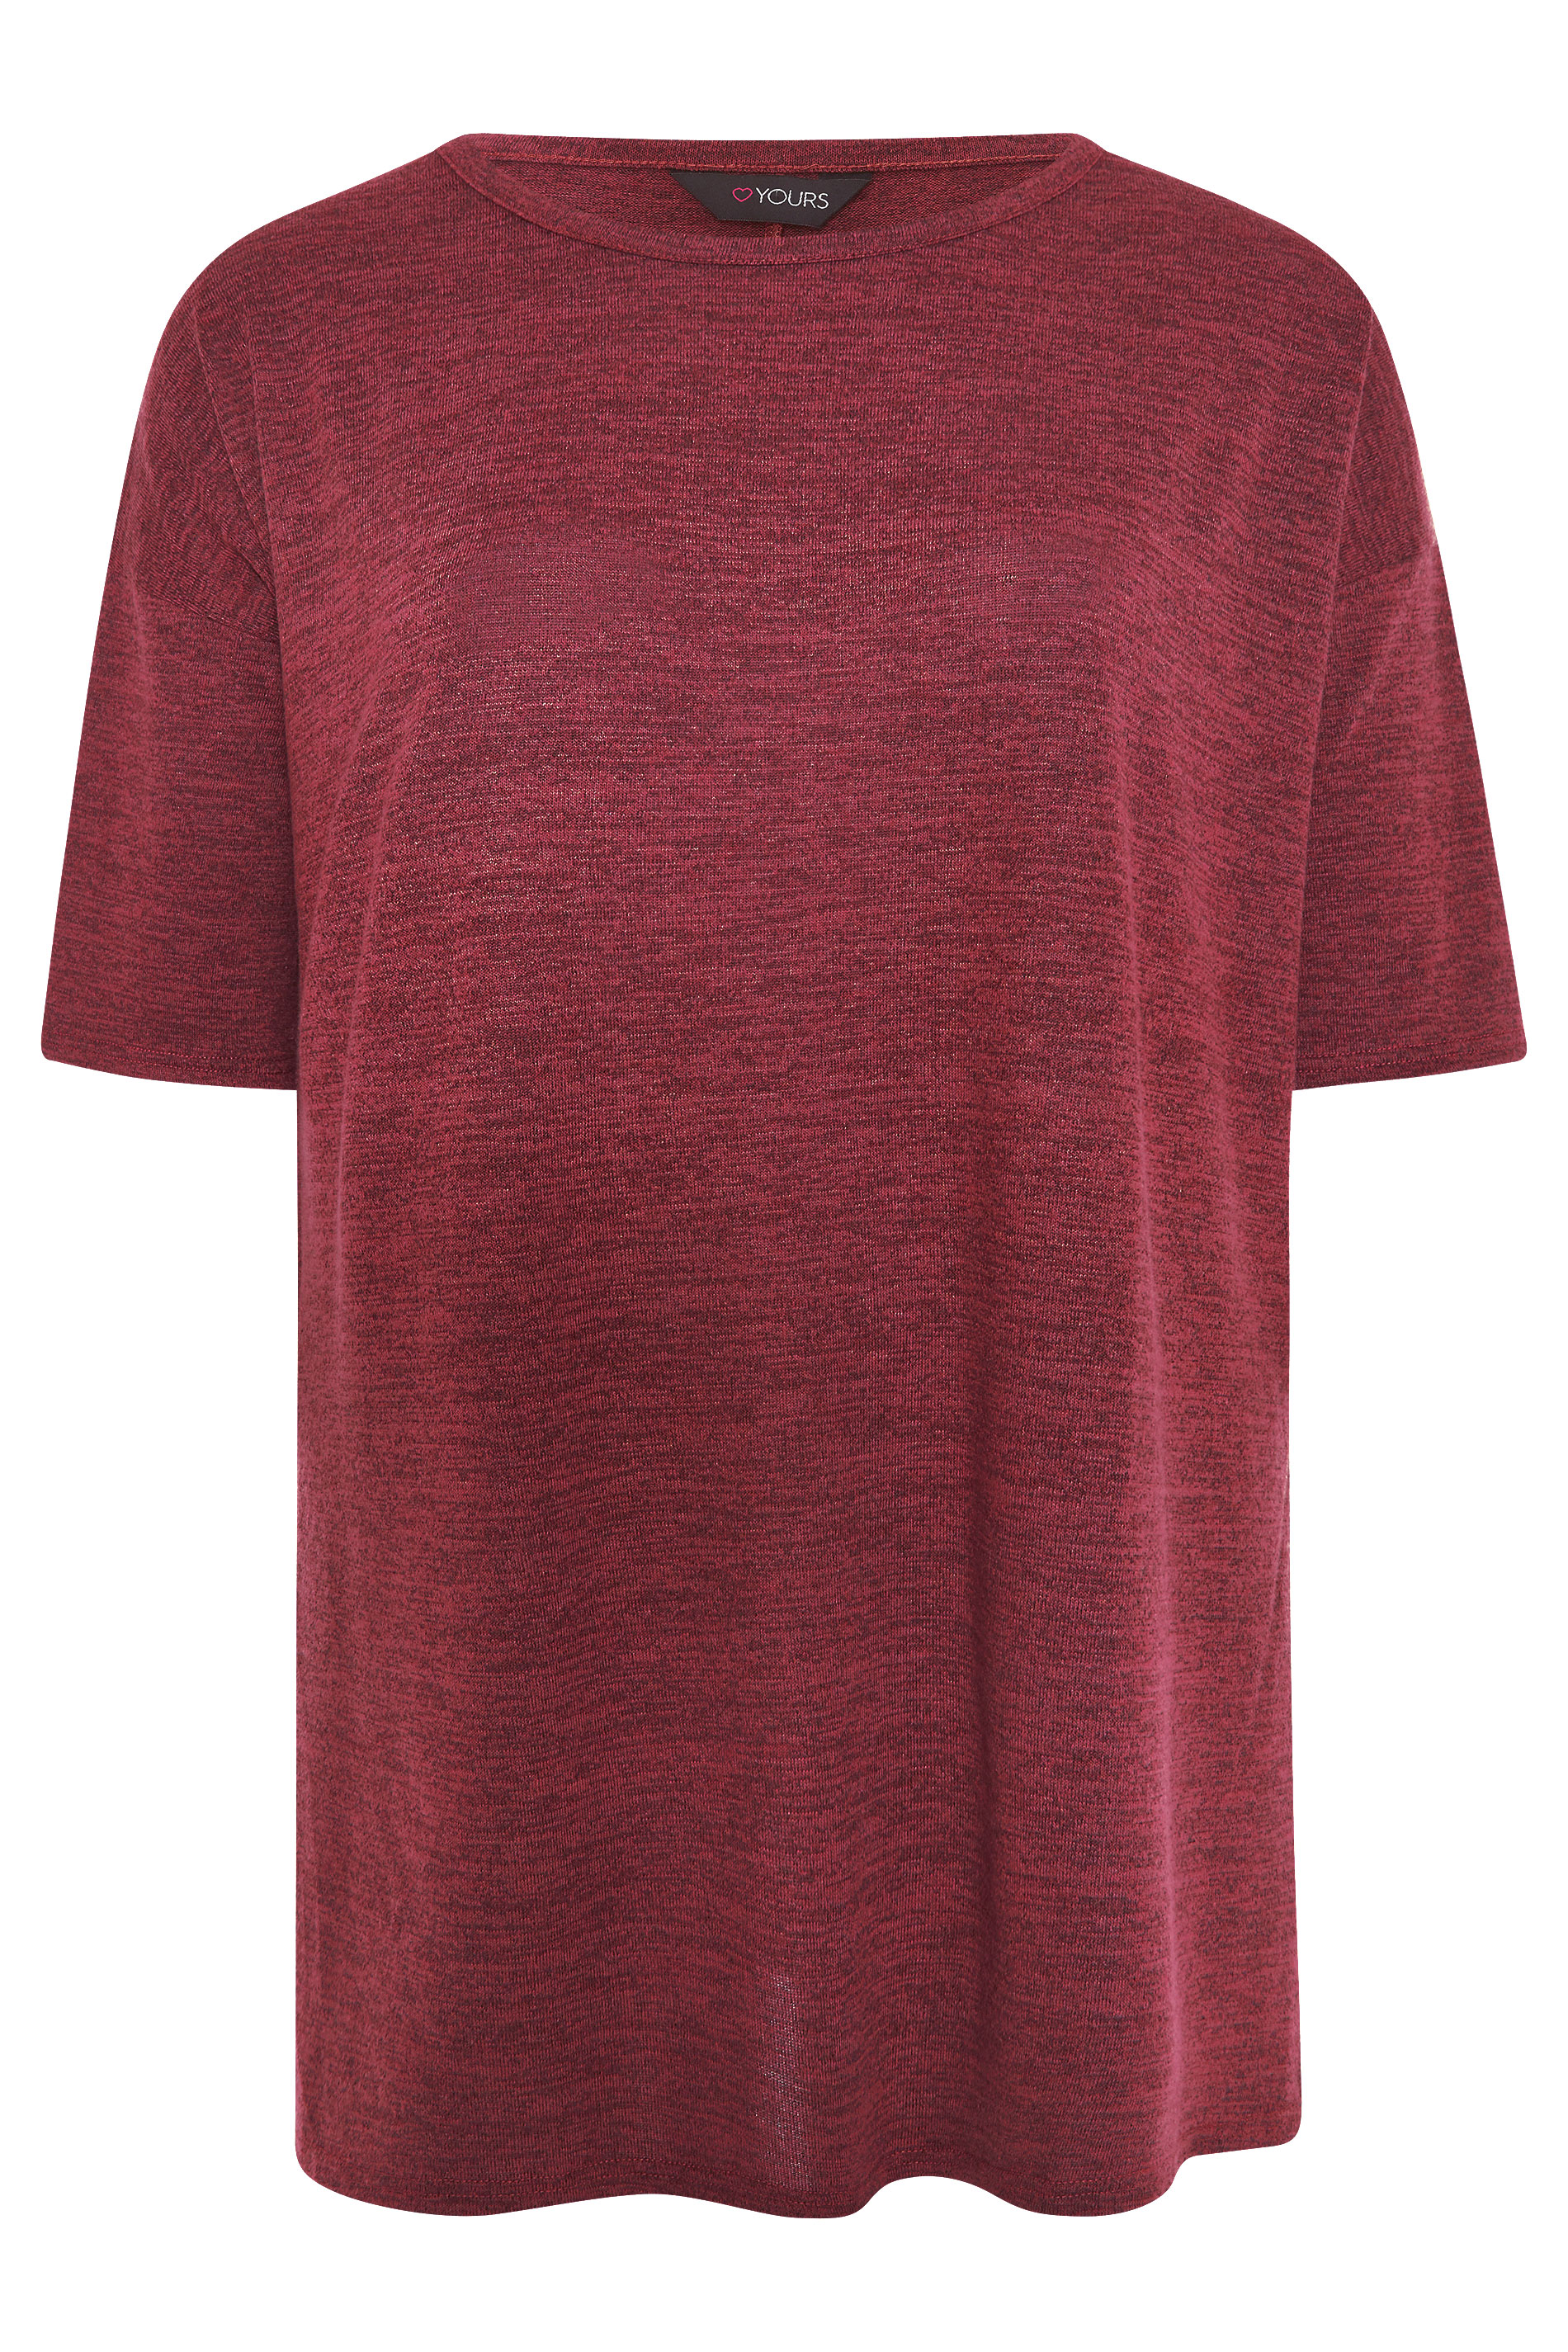 Grande taille  Tops Grande taille  T-Shirts Basiques & Débardeurs | T-Shirt Rouge Cerise en Jersey - EL69898